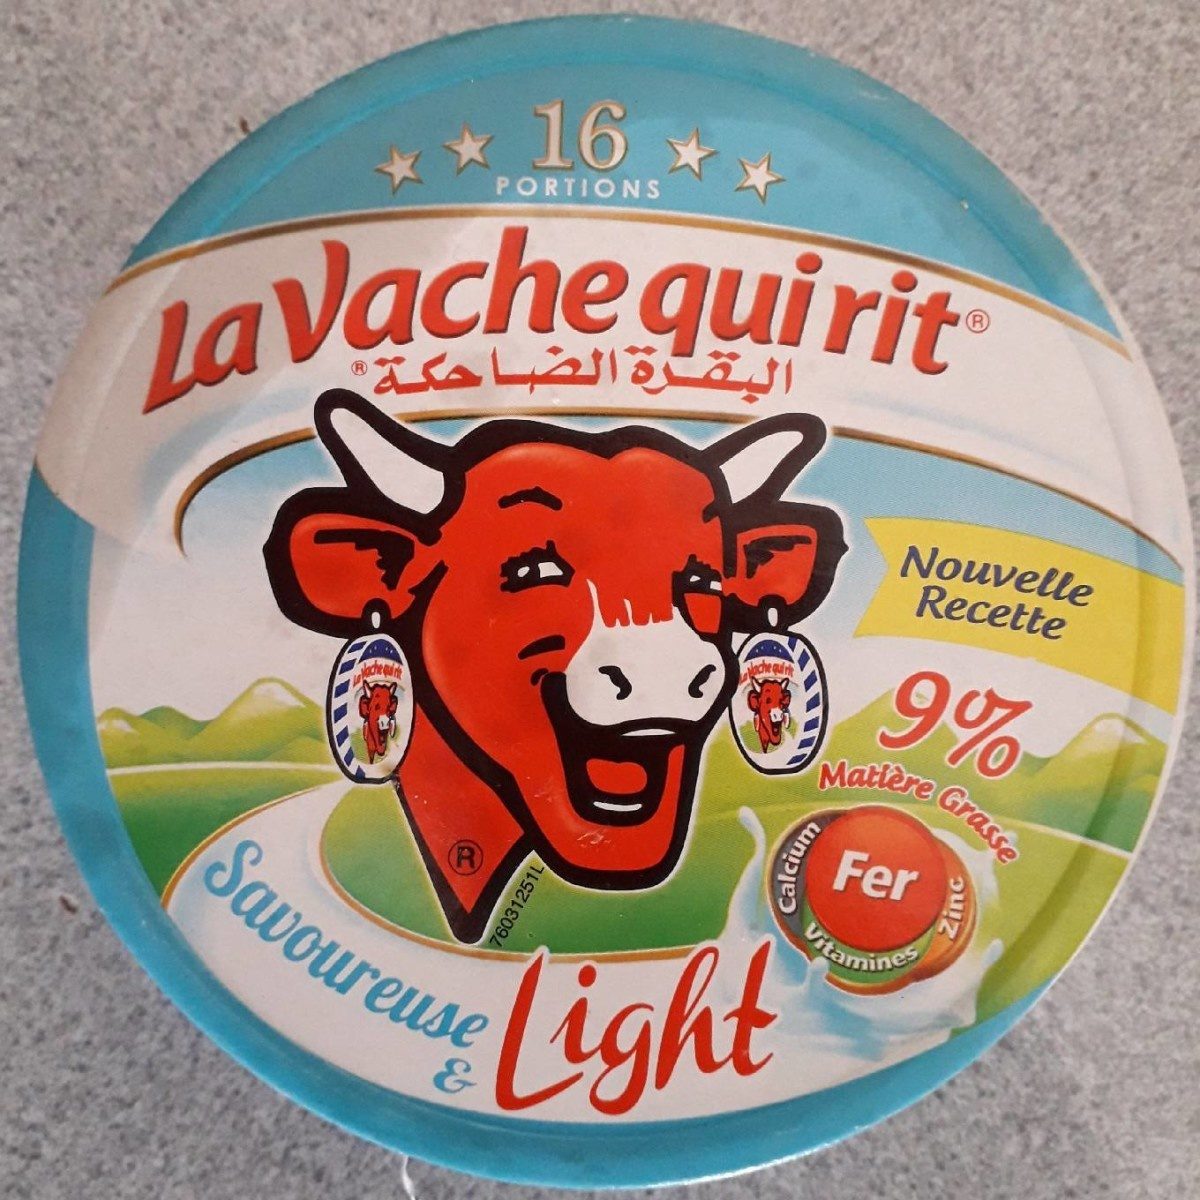 La vache qui rit Light - Produit - fr